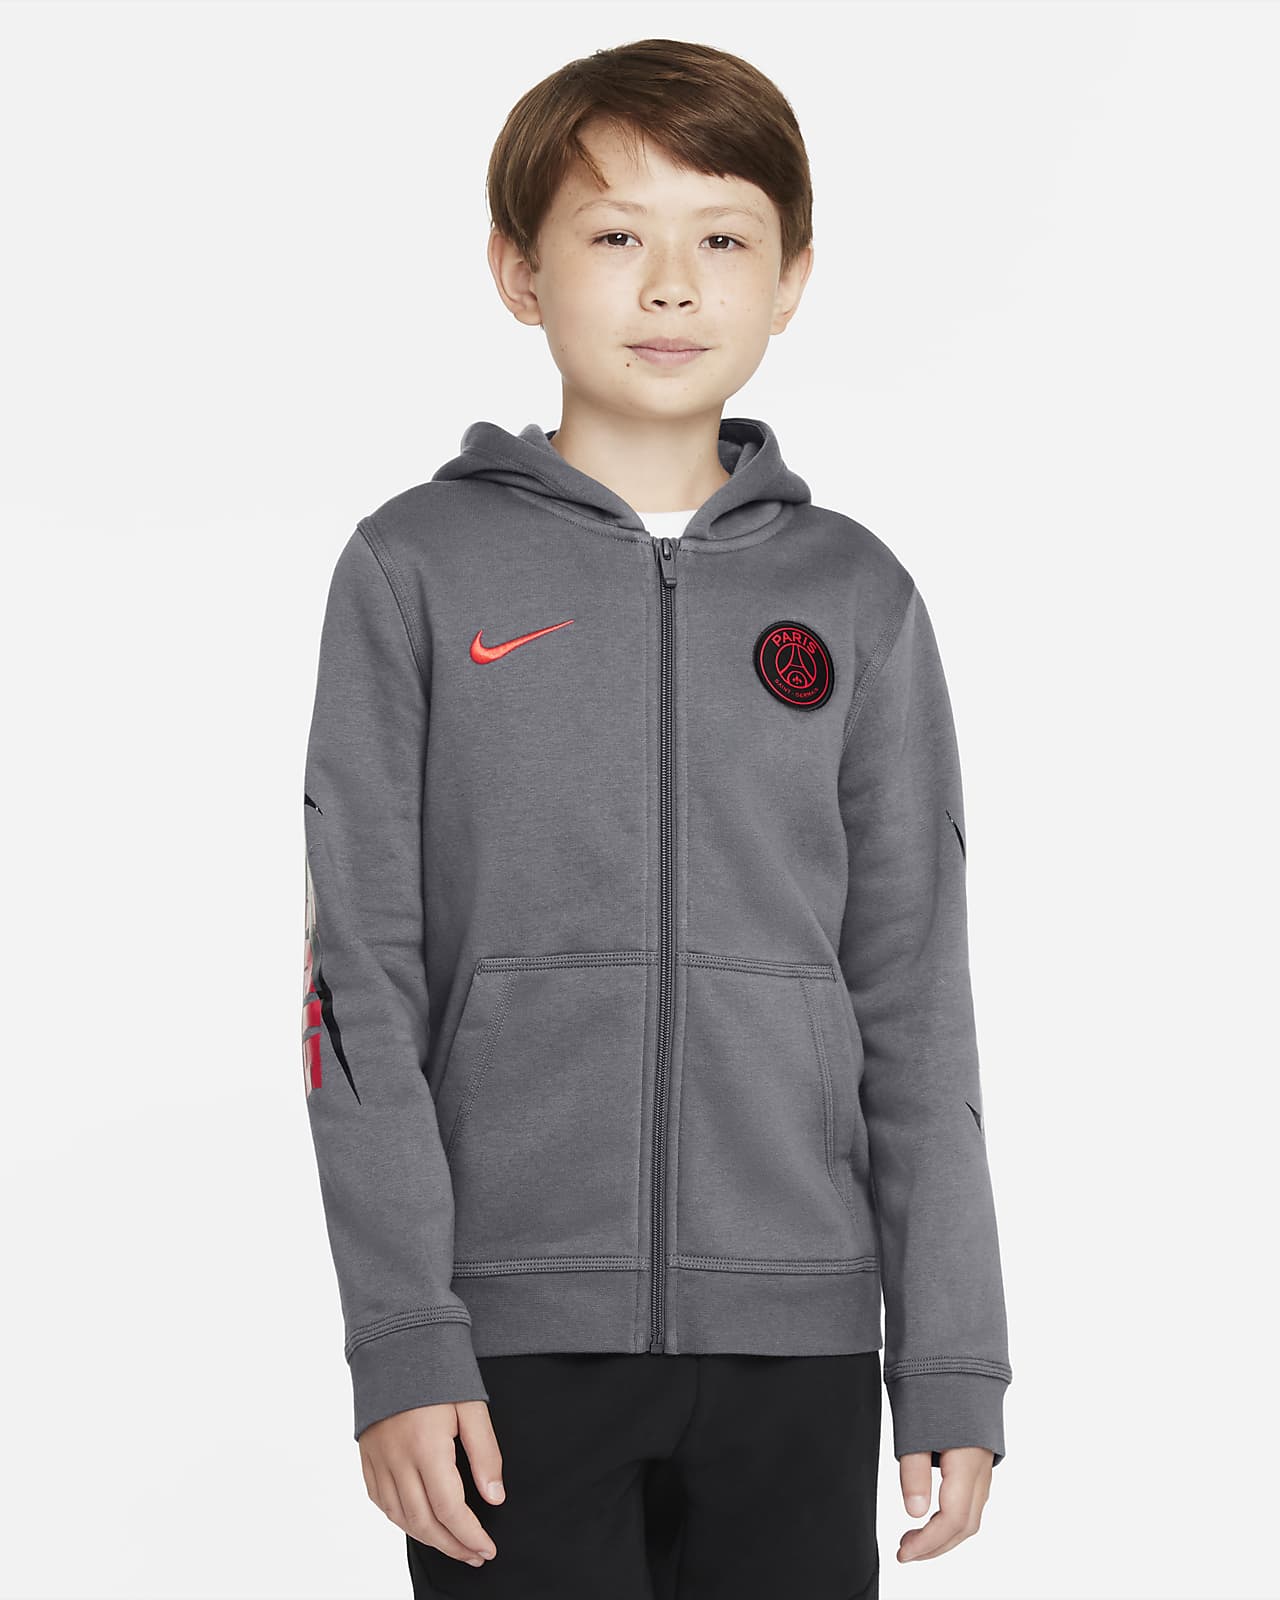 Paris Saint-Germain Big Kids' Full-Zip Fleece Hoodie. Nike.com